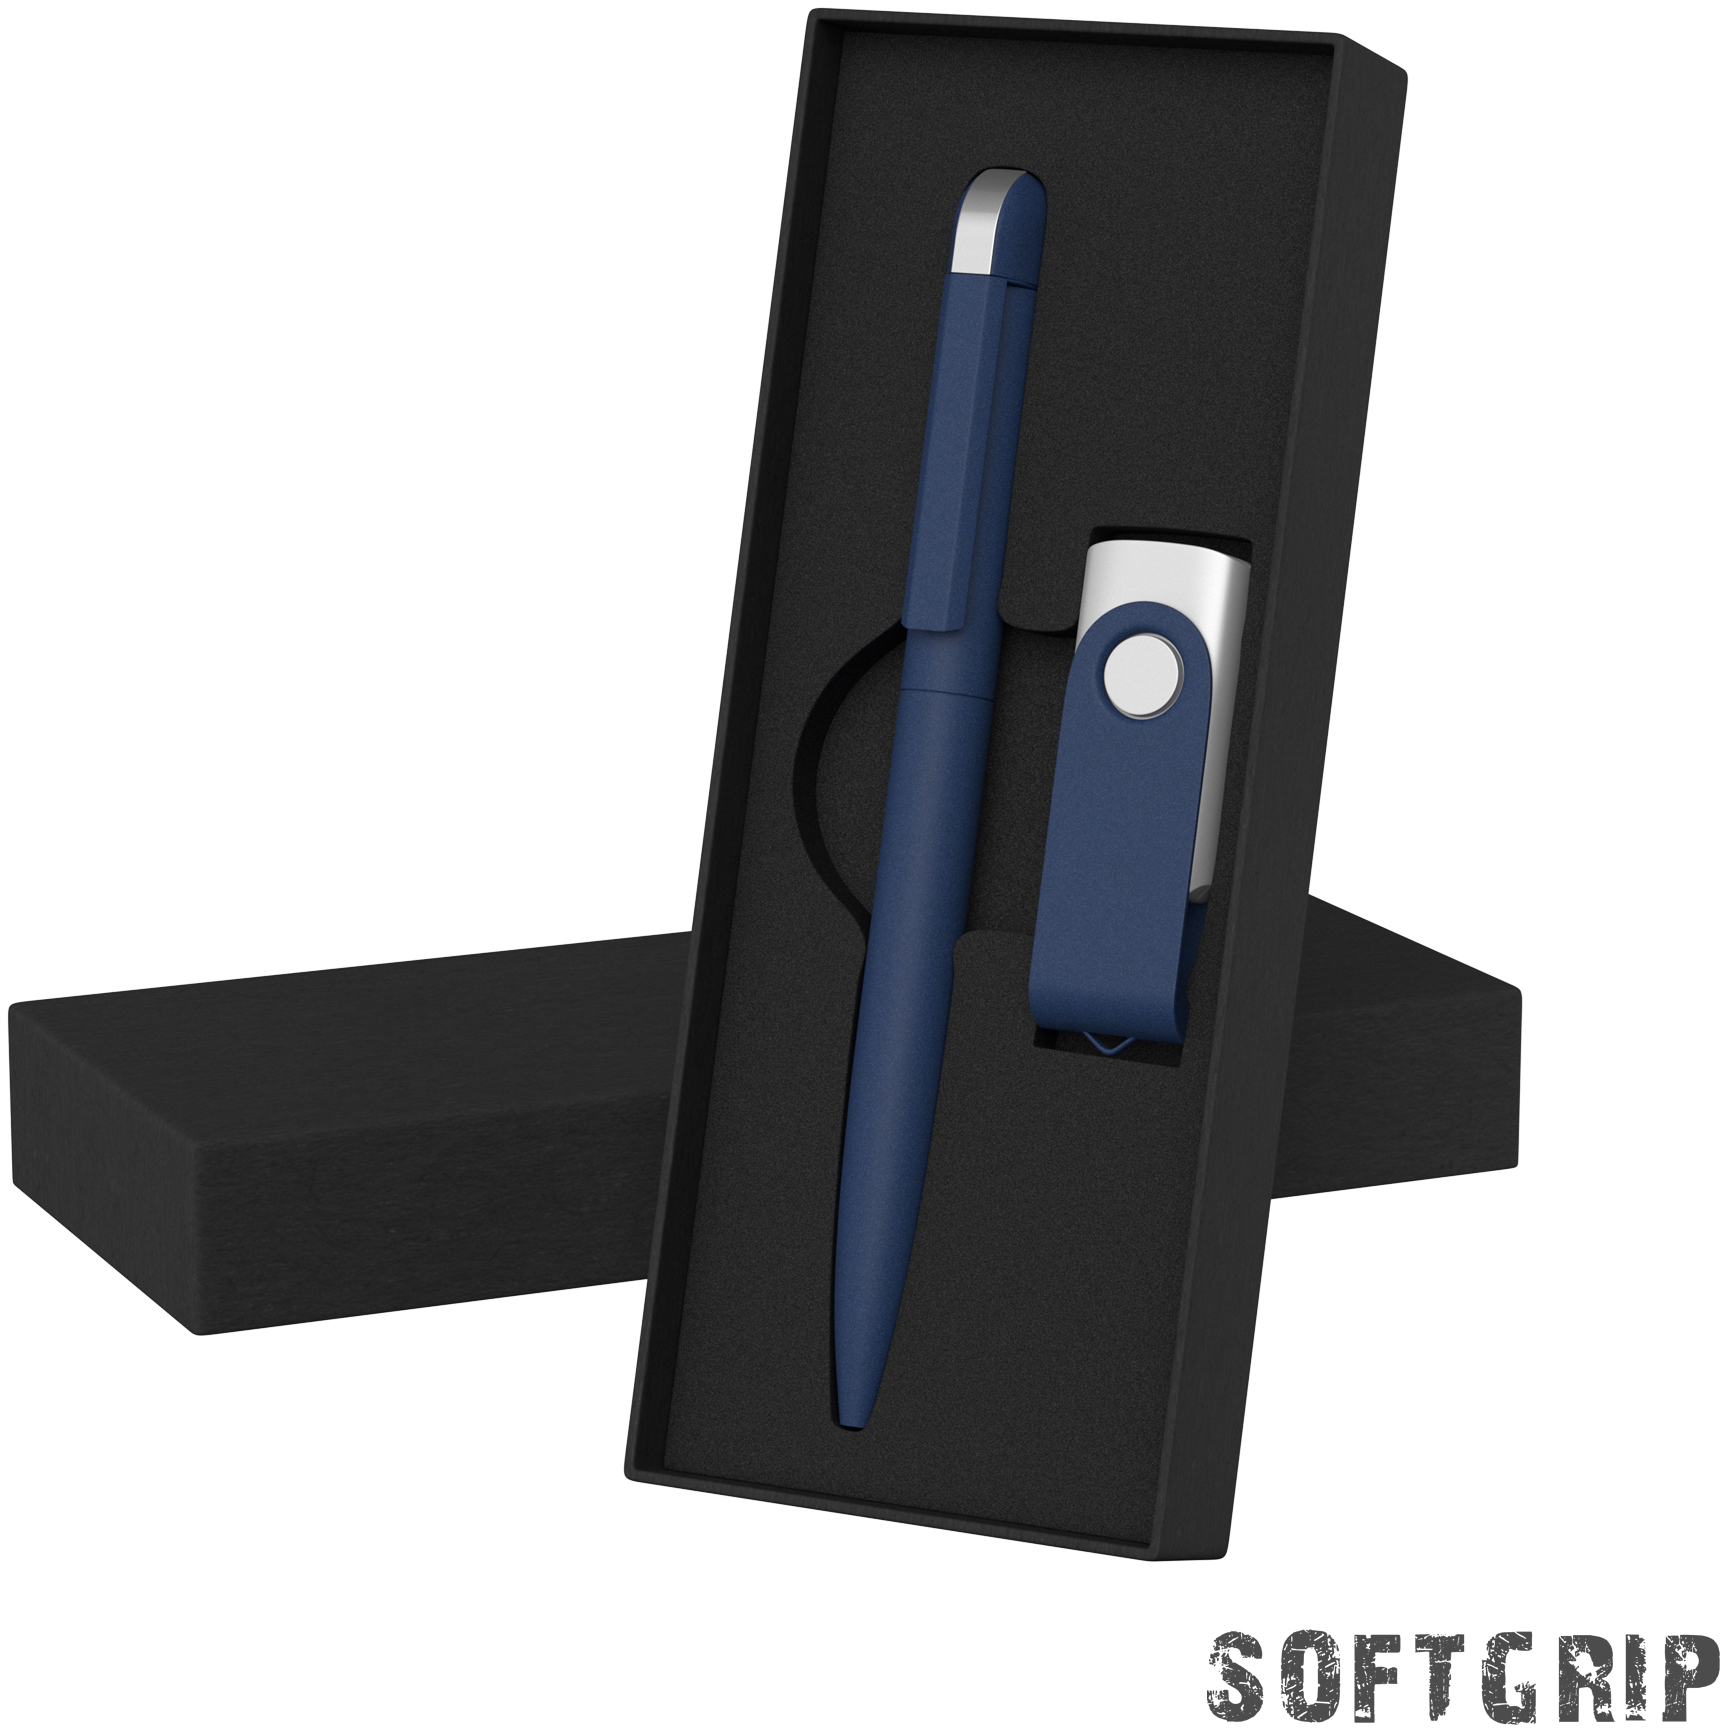 Артикул: E6971-21/16Gb — Набор ручка + флеш-карта 16 Гб в футляре,  покрытие softgrip